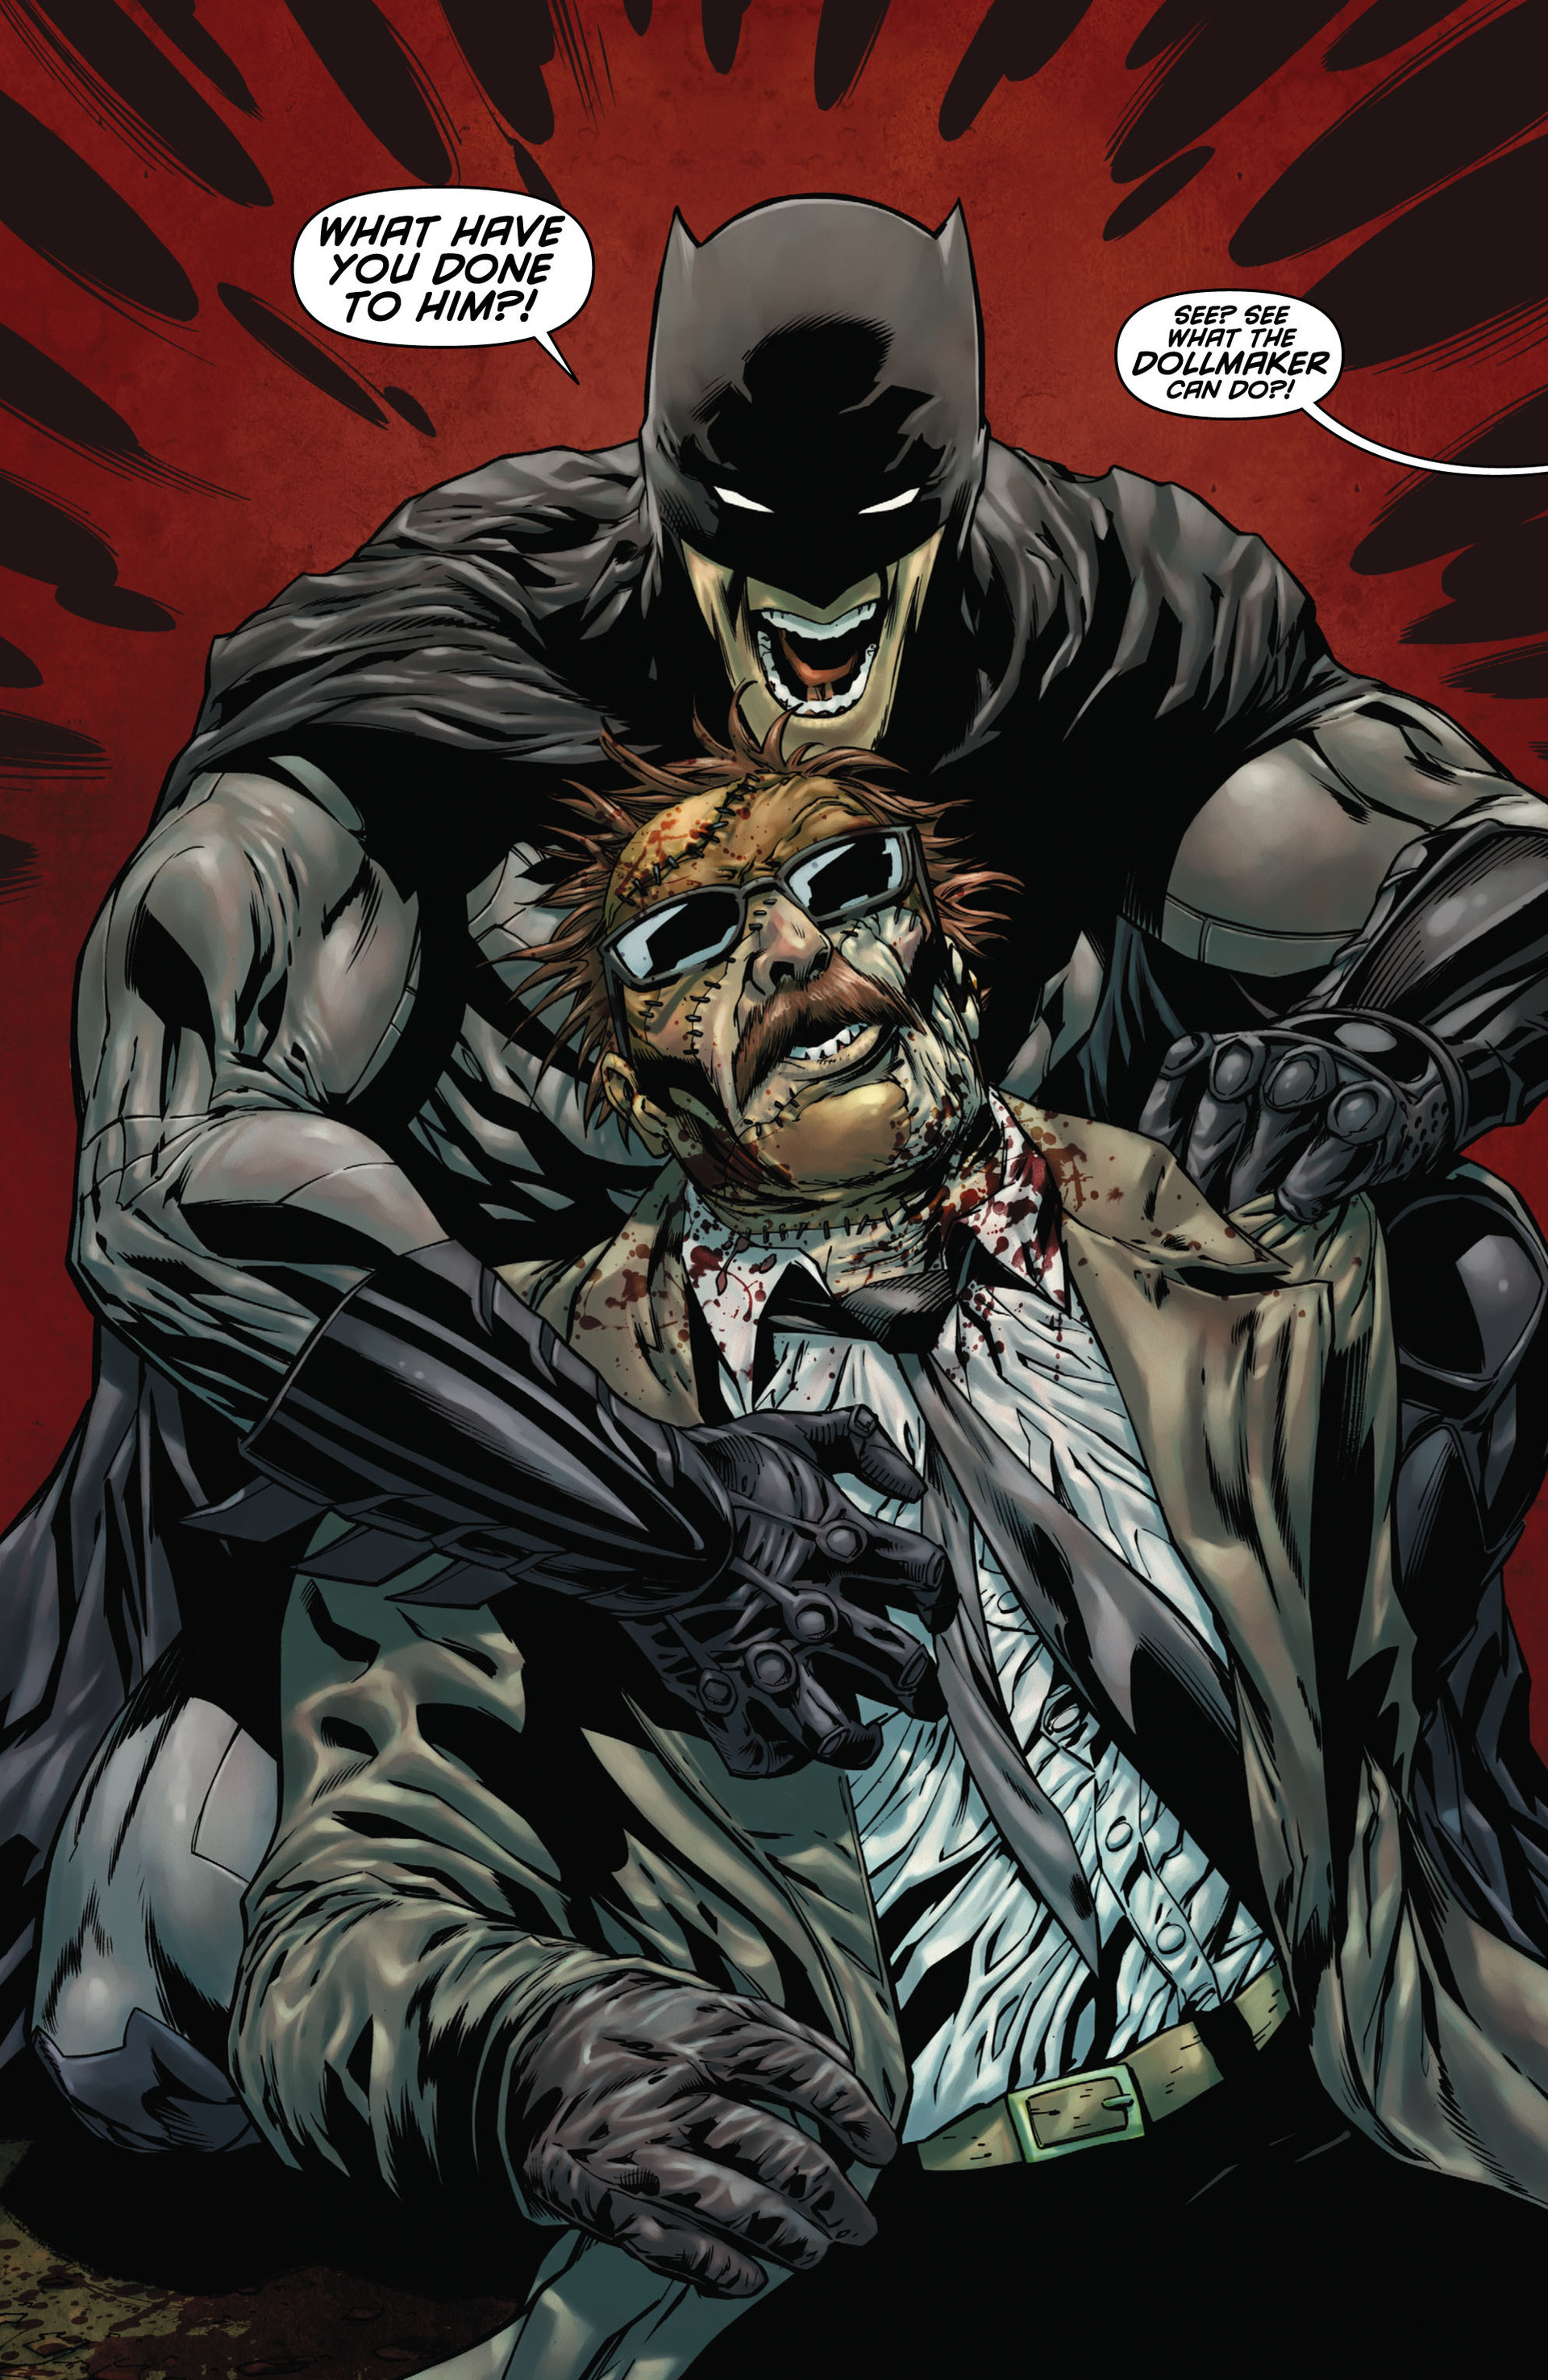 Read online Batman: Detective Comics comic -  Issue # TPB 1 - 49